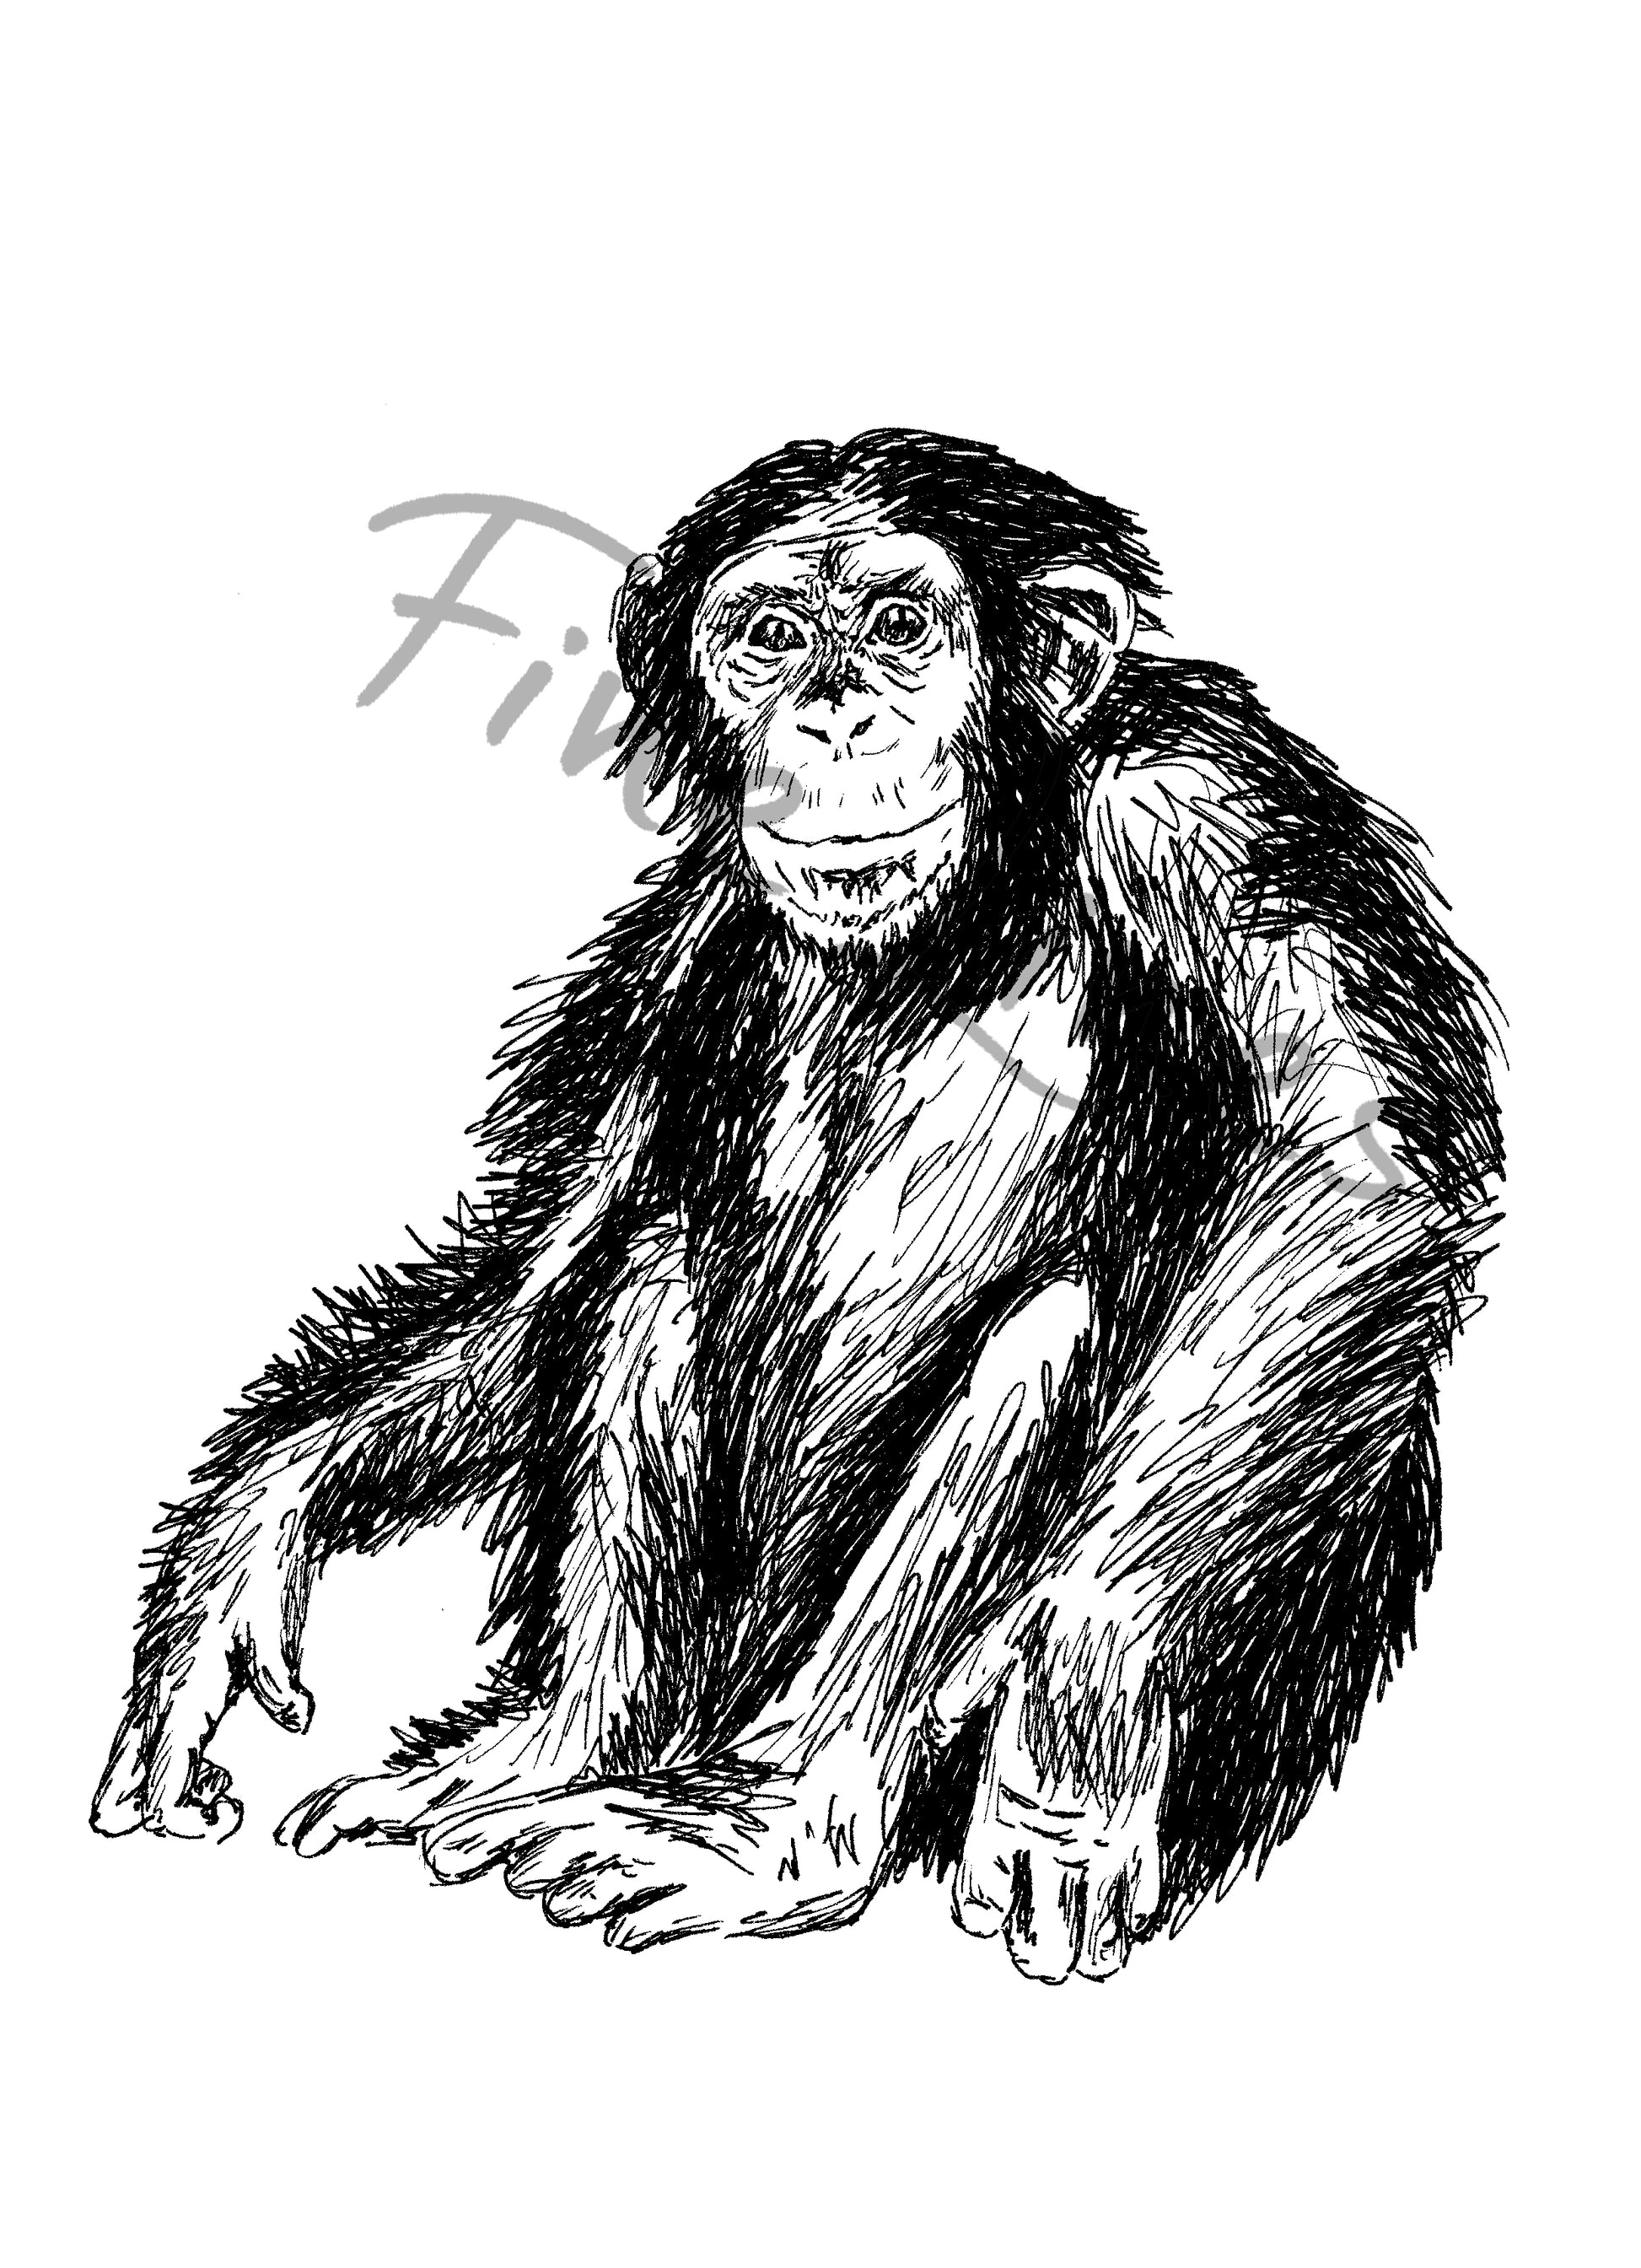 תמונה להדפסה ומיסגור שימפנזה - rachelsfinelines